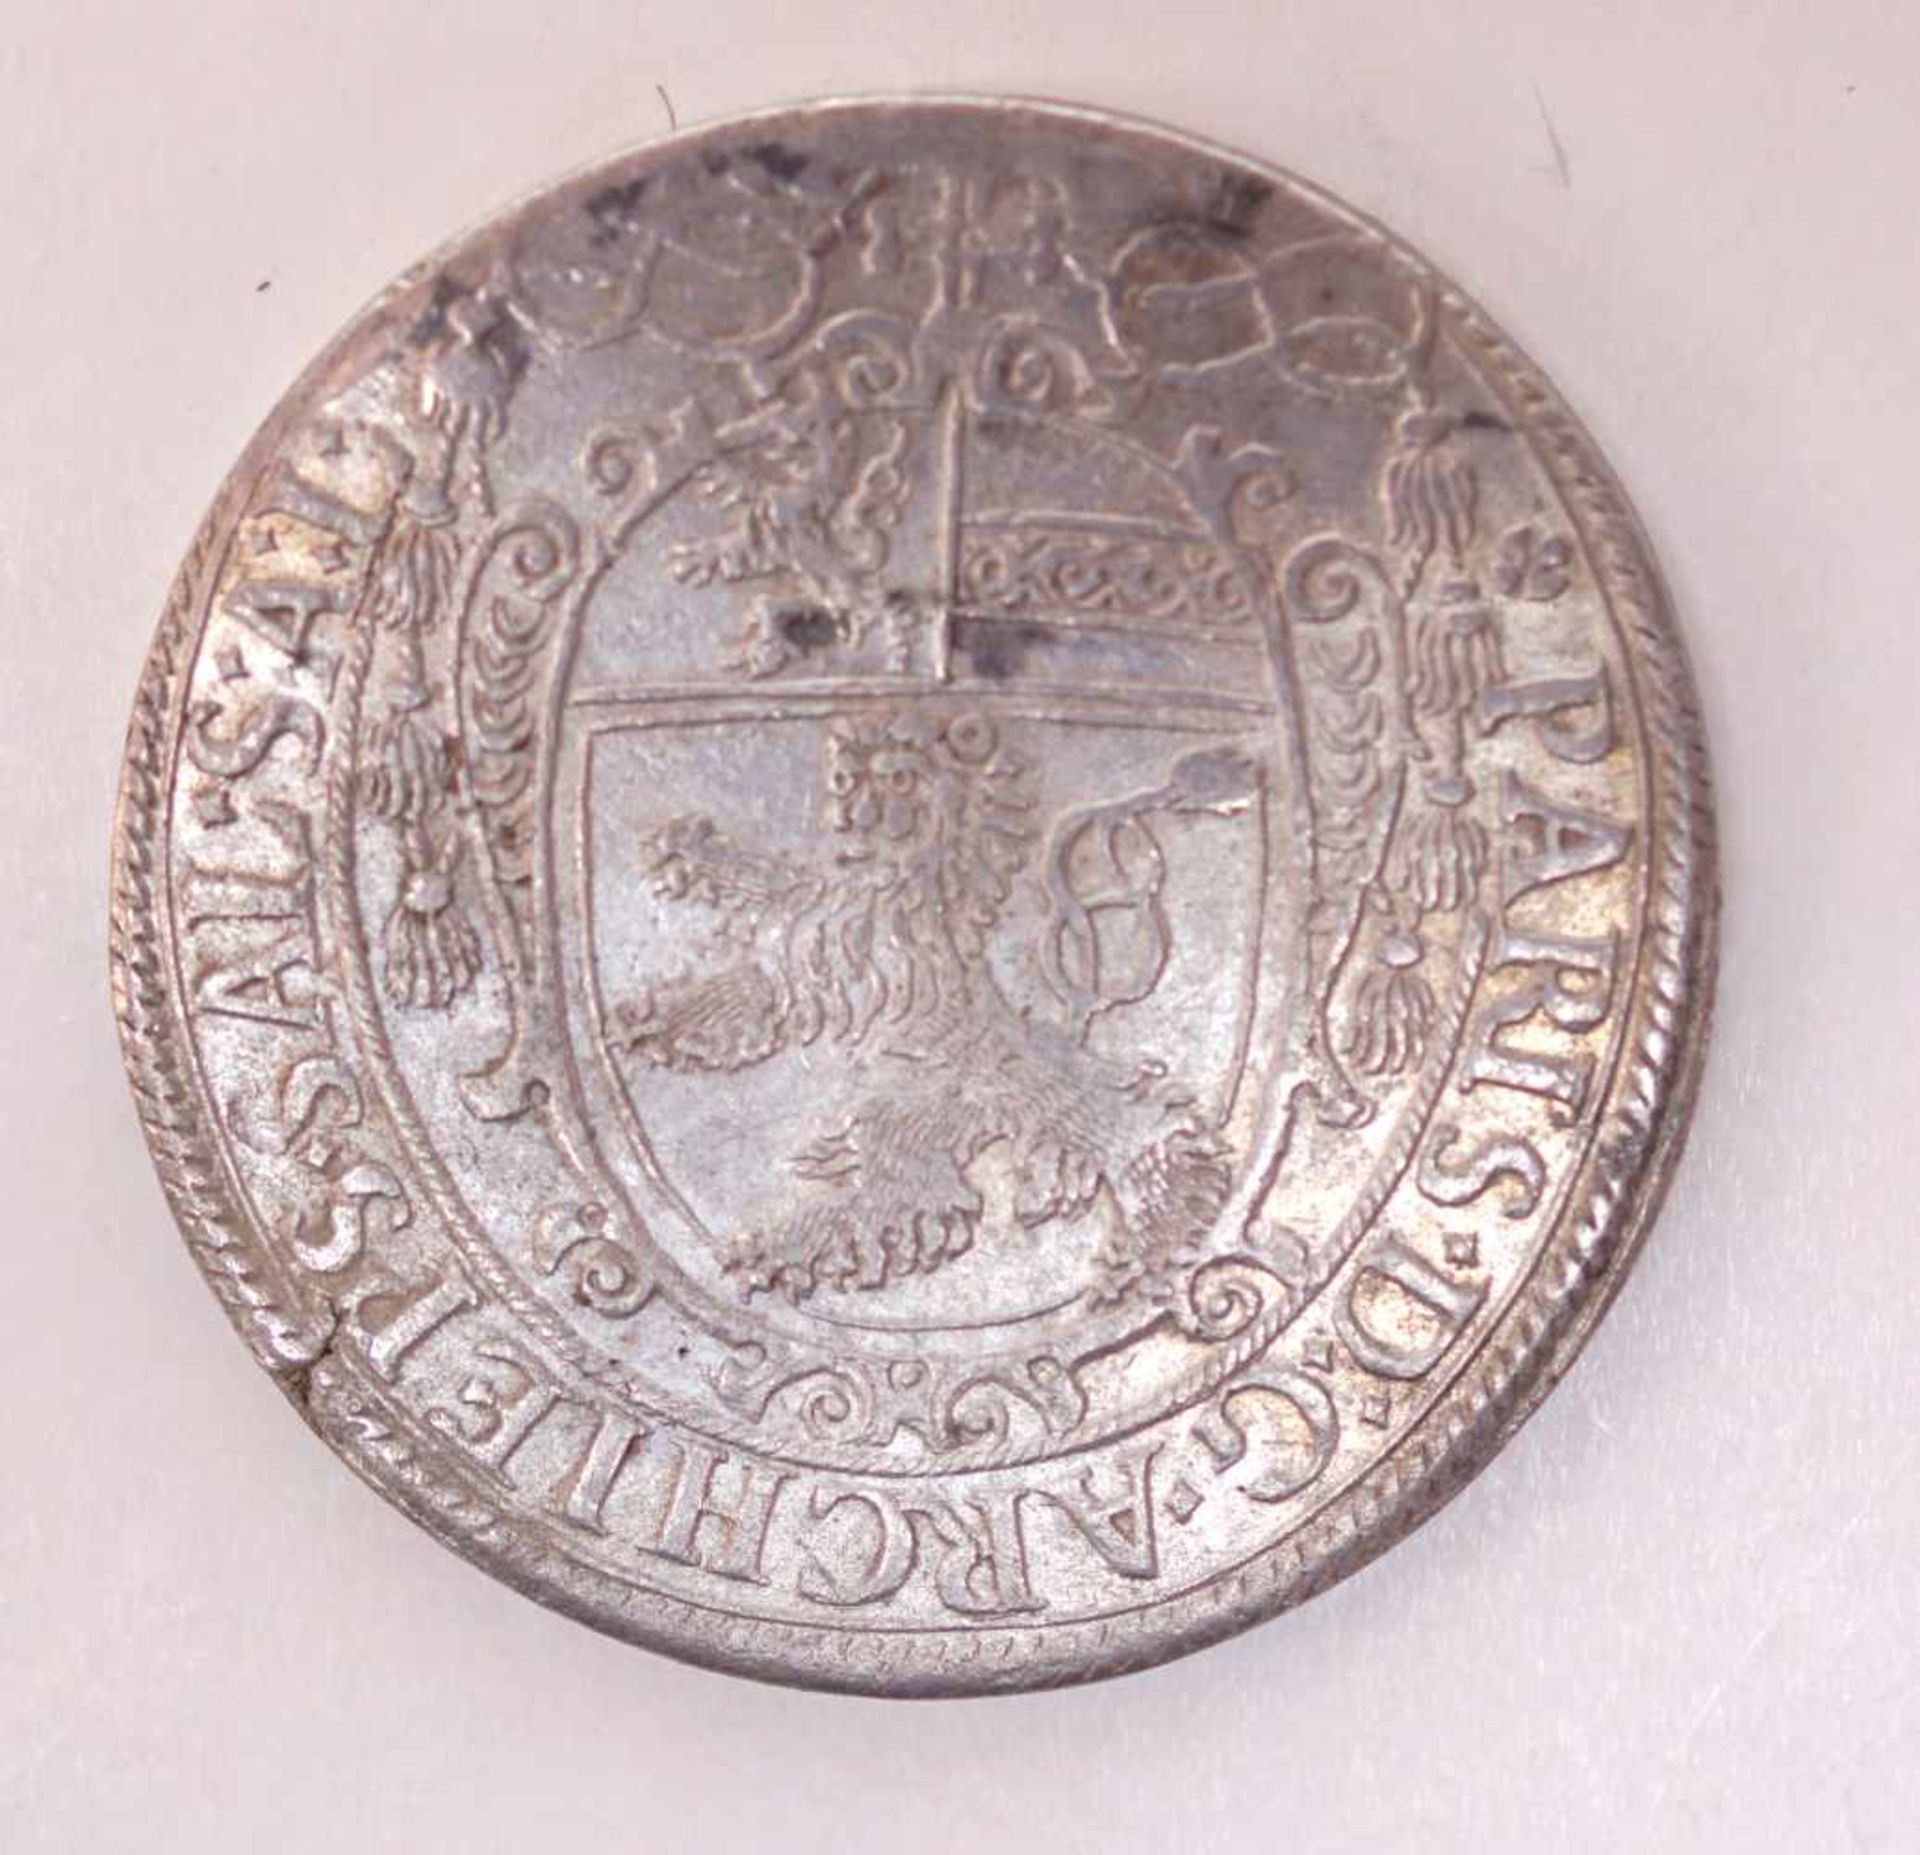 Erzbistum Salzburg, Paris Graf von Lodron 1619-1653, Taler von 1623VS: Wappenschild der Grafen von - Image 3 of 3